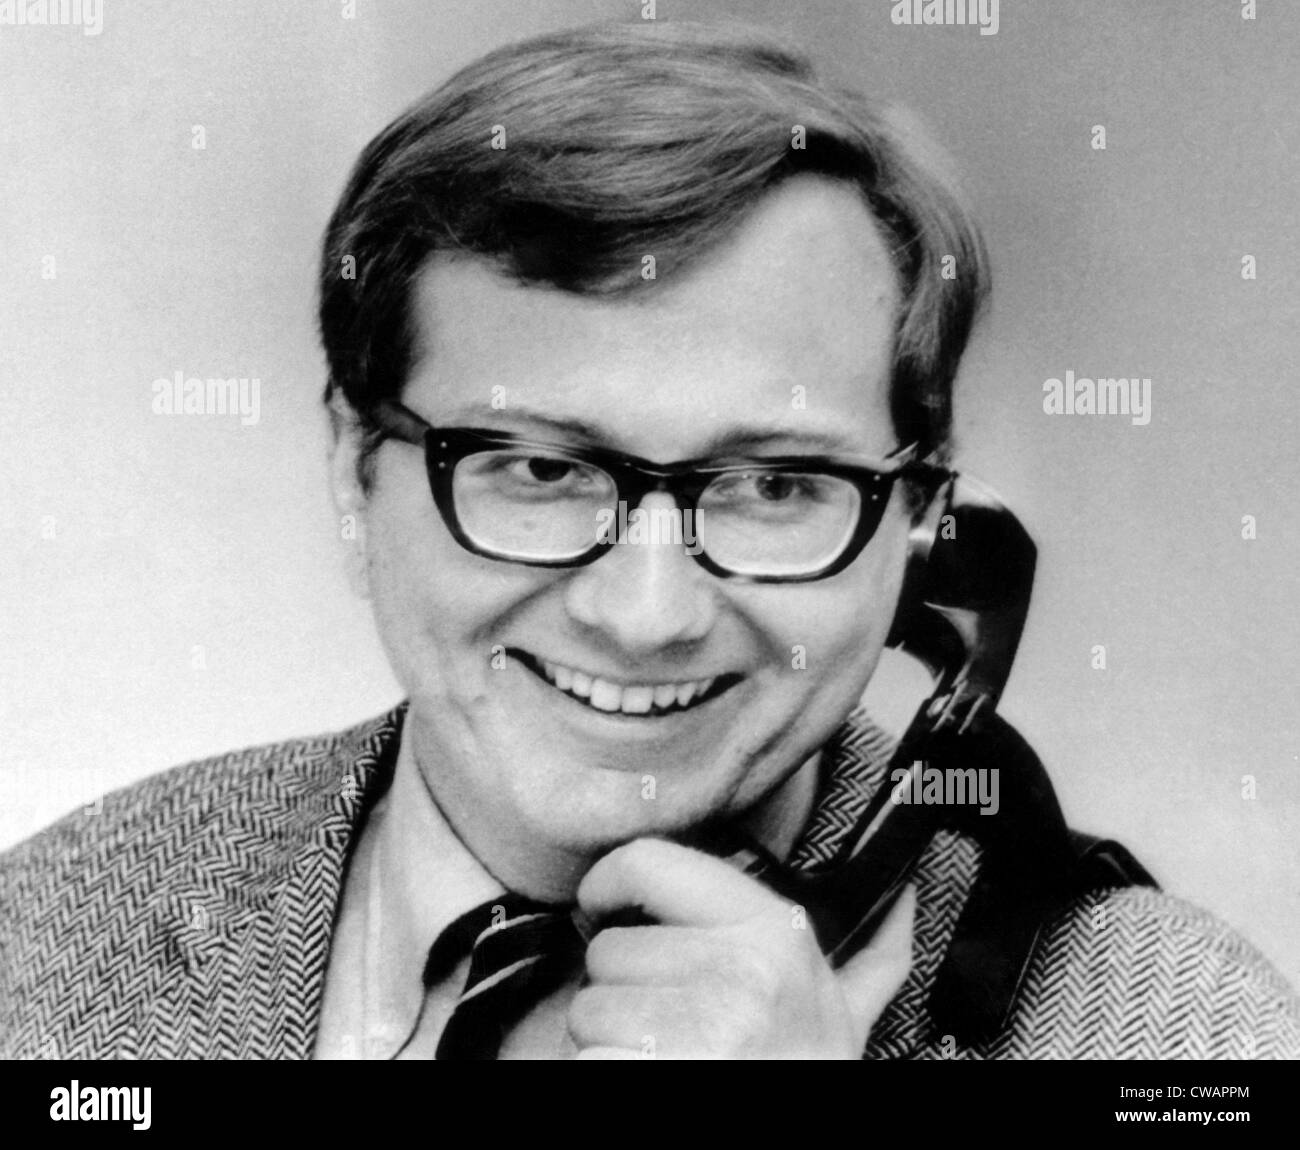 Pulizer Preis gewinnende Journalist Seymour Hersh. ca. 1970er Jahre. Höflichkeit: CSU Archive/Everett Collection. Stockfoto